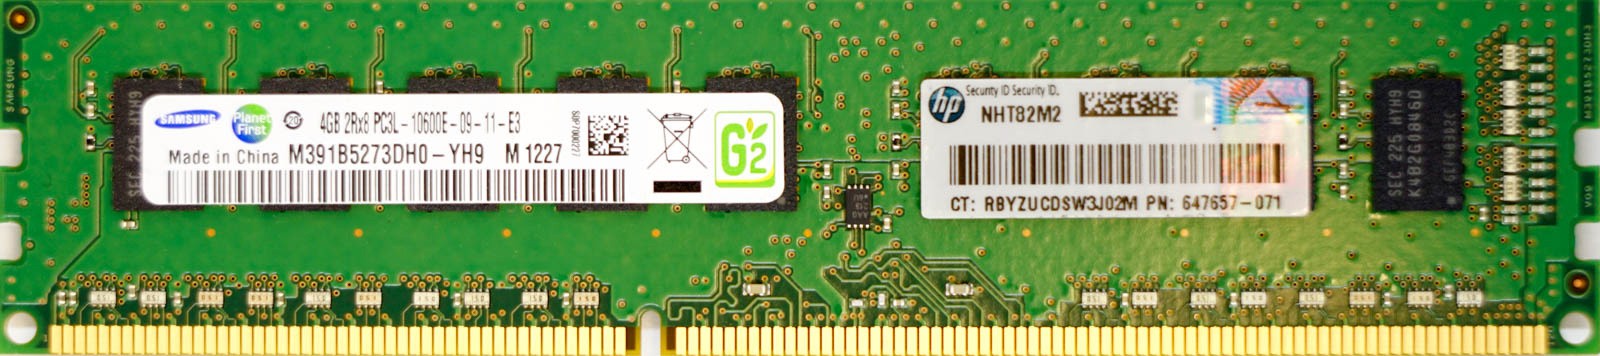 HP (647657-071) - 4GB PC3L-10600E (DDR3-1333Mhz, 2RX8)